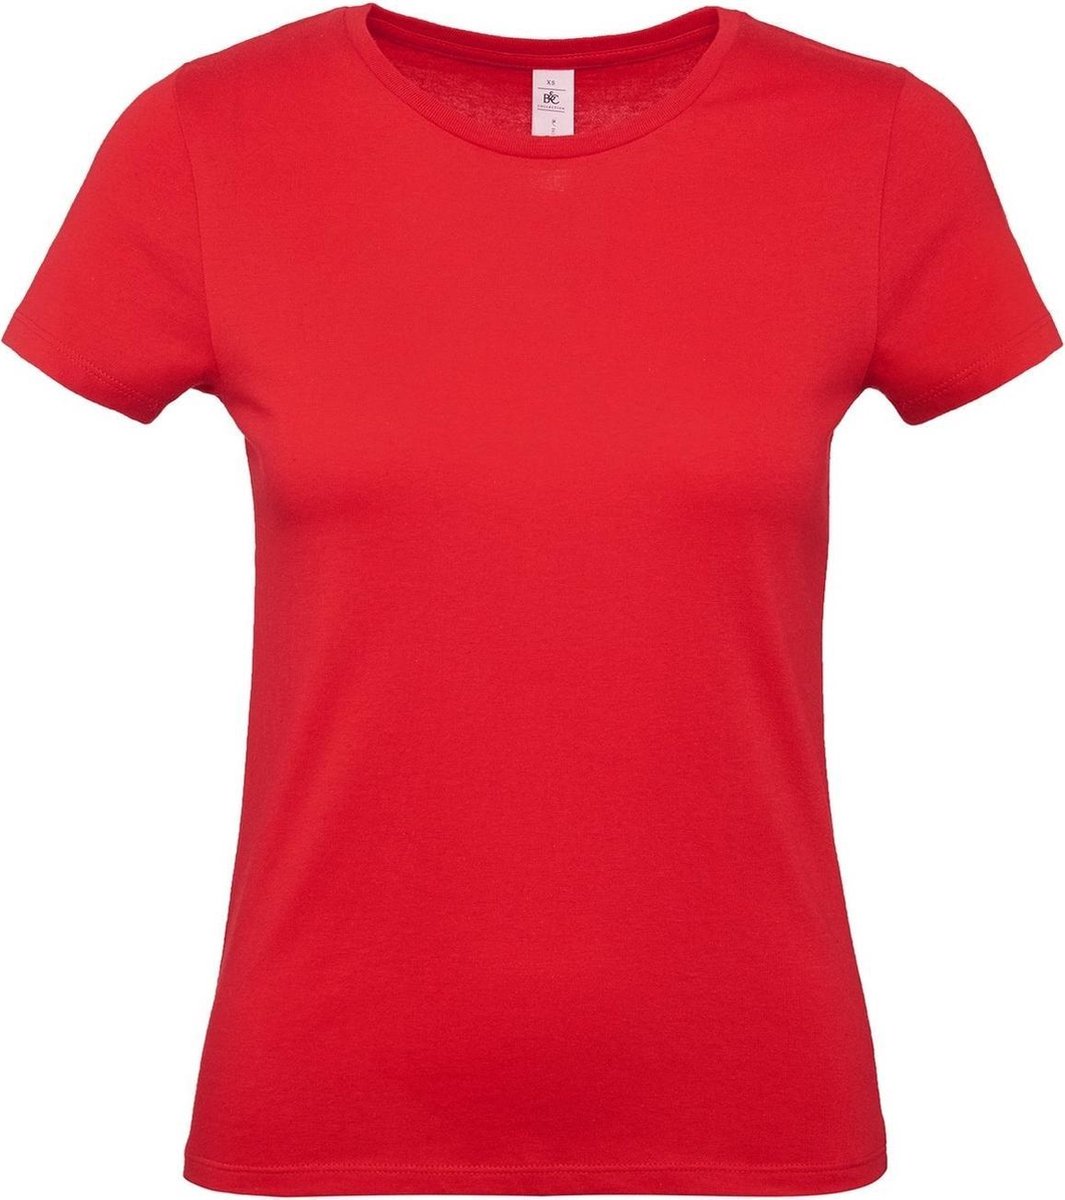 Set van 3x stuks rood basic t-shirts met ronde hals voor dames - katoen - 145 grams - rode shirts / kleding, maat: XS (34)